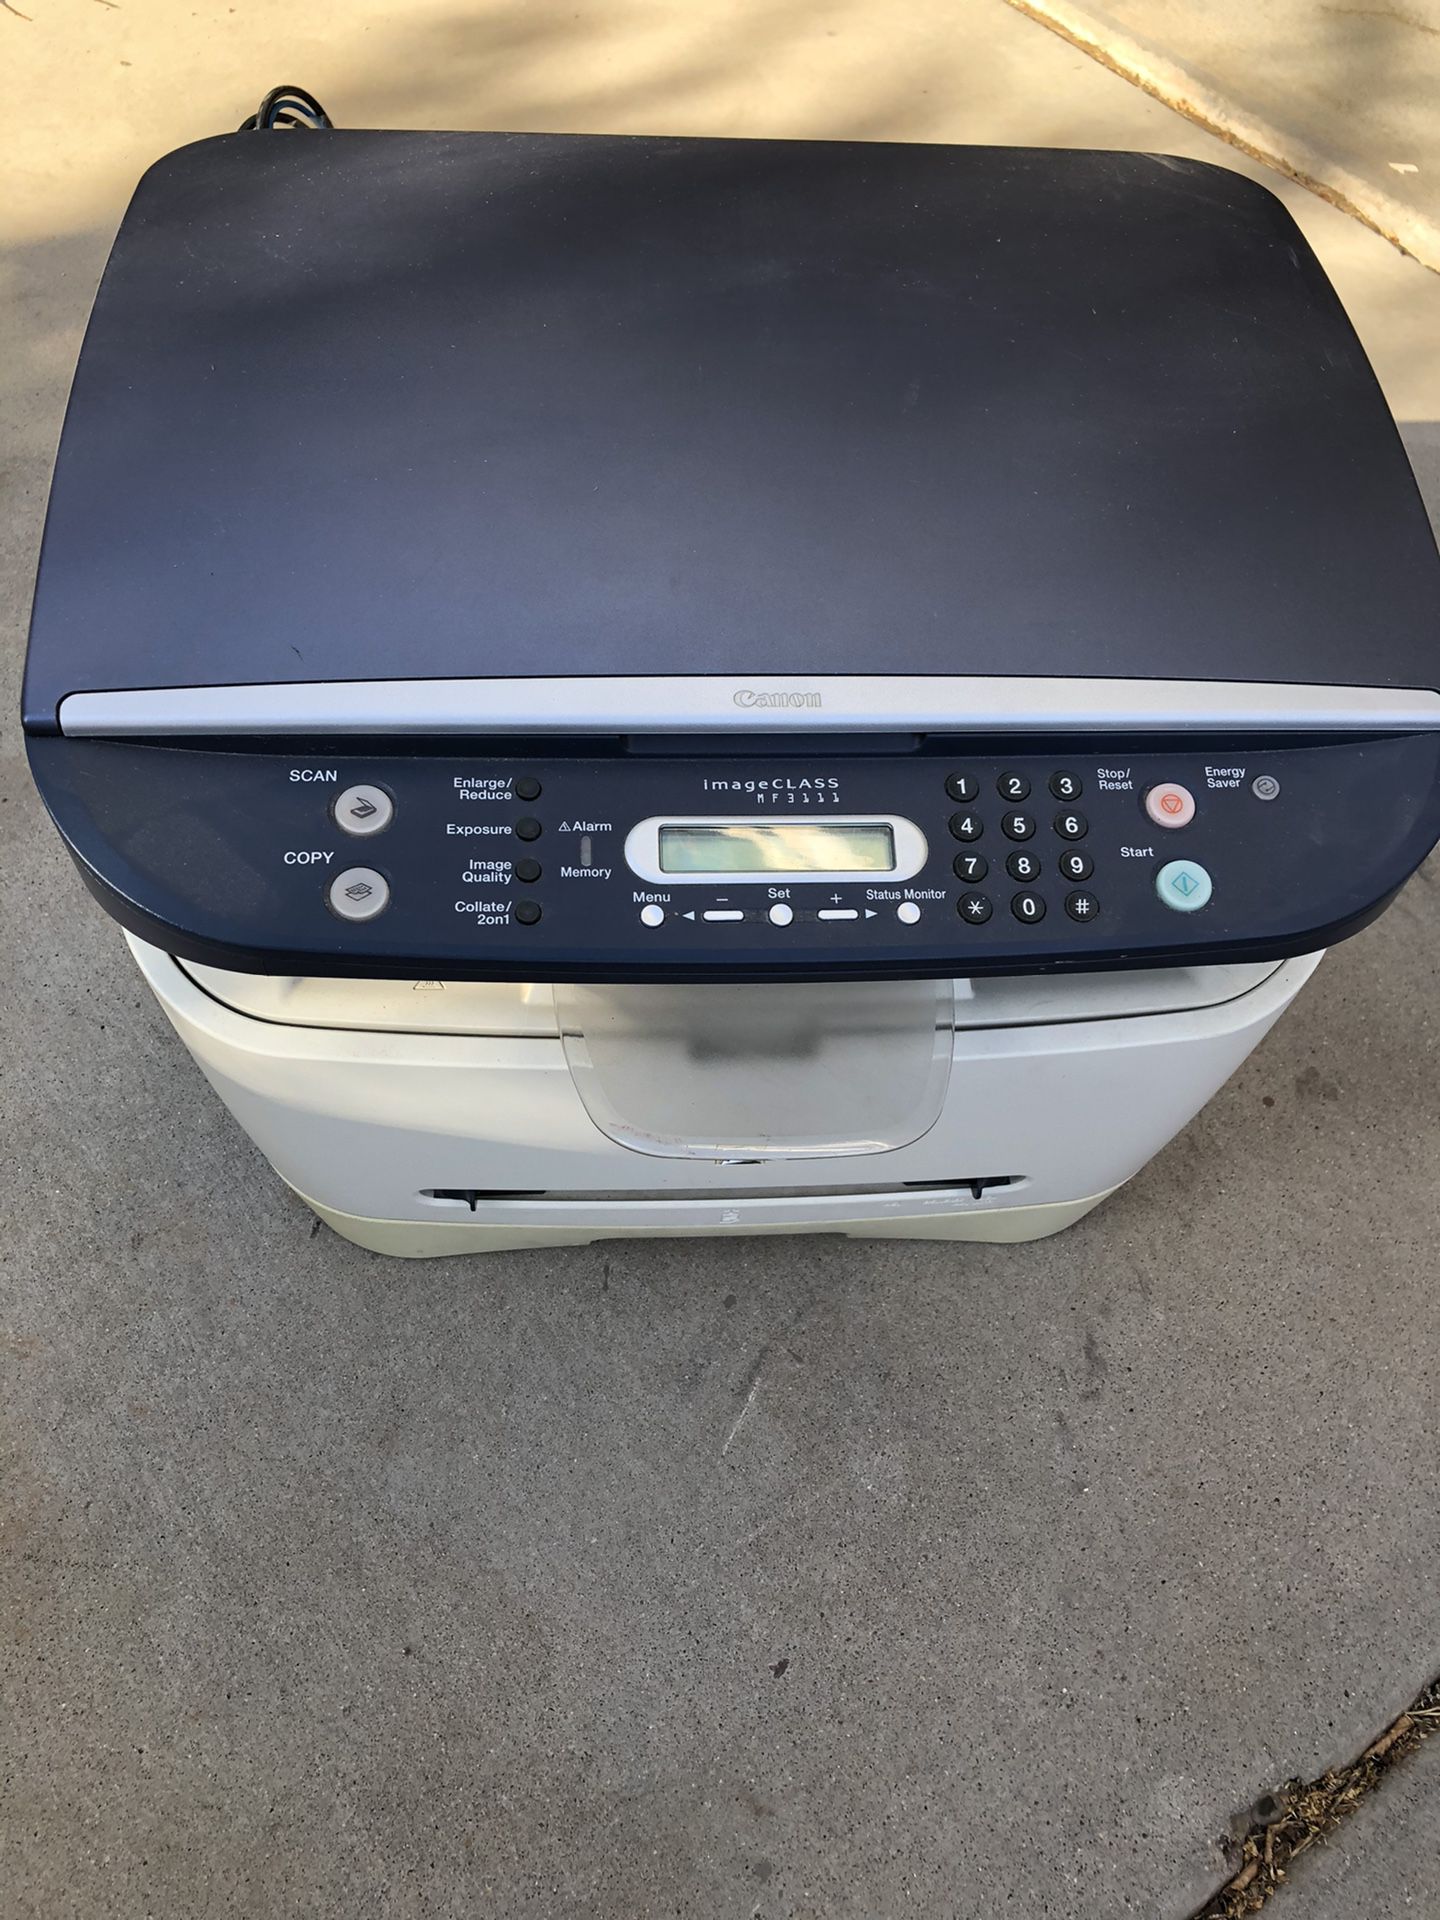 Canon printer copy machine and fax